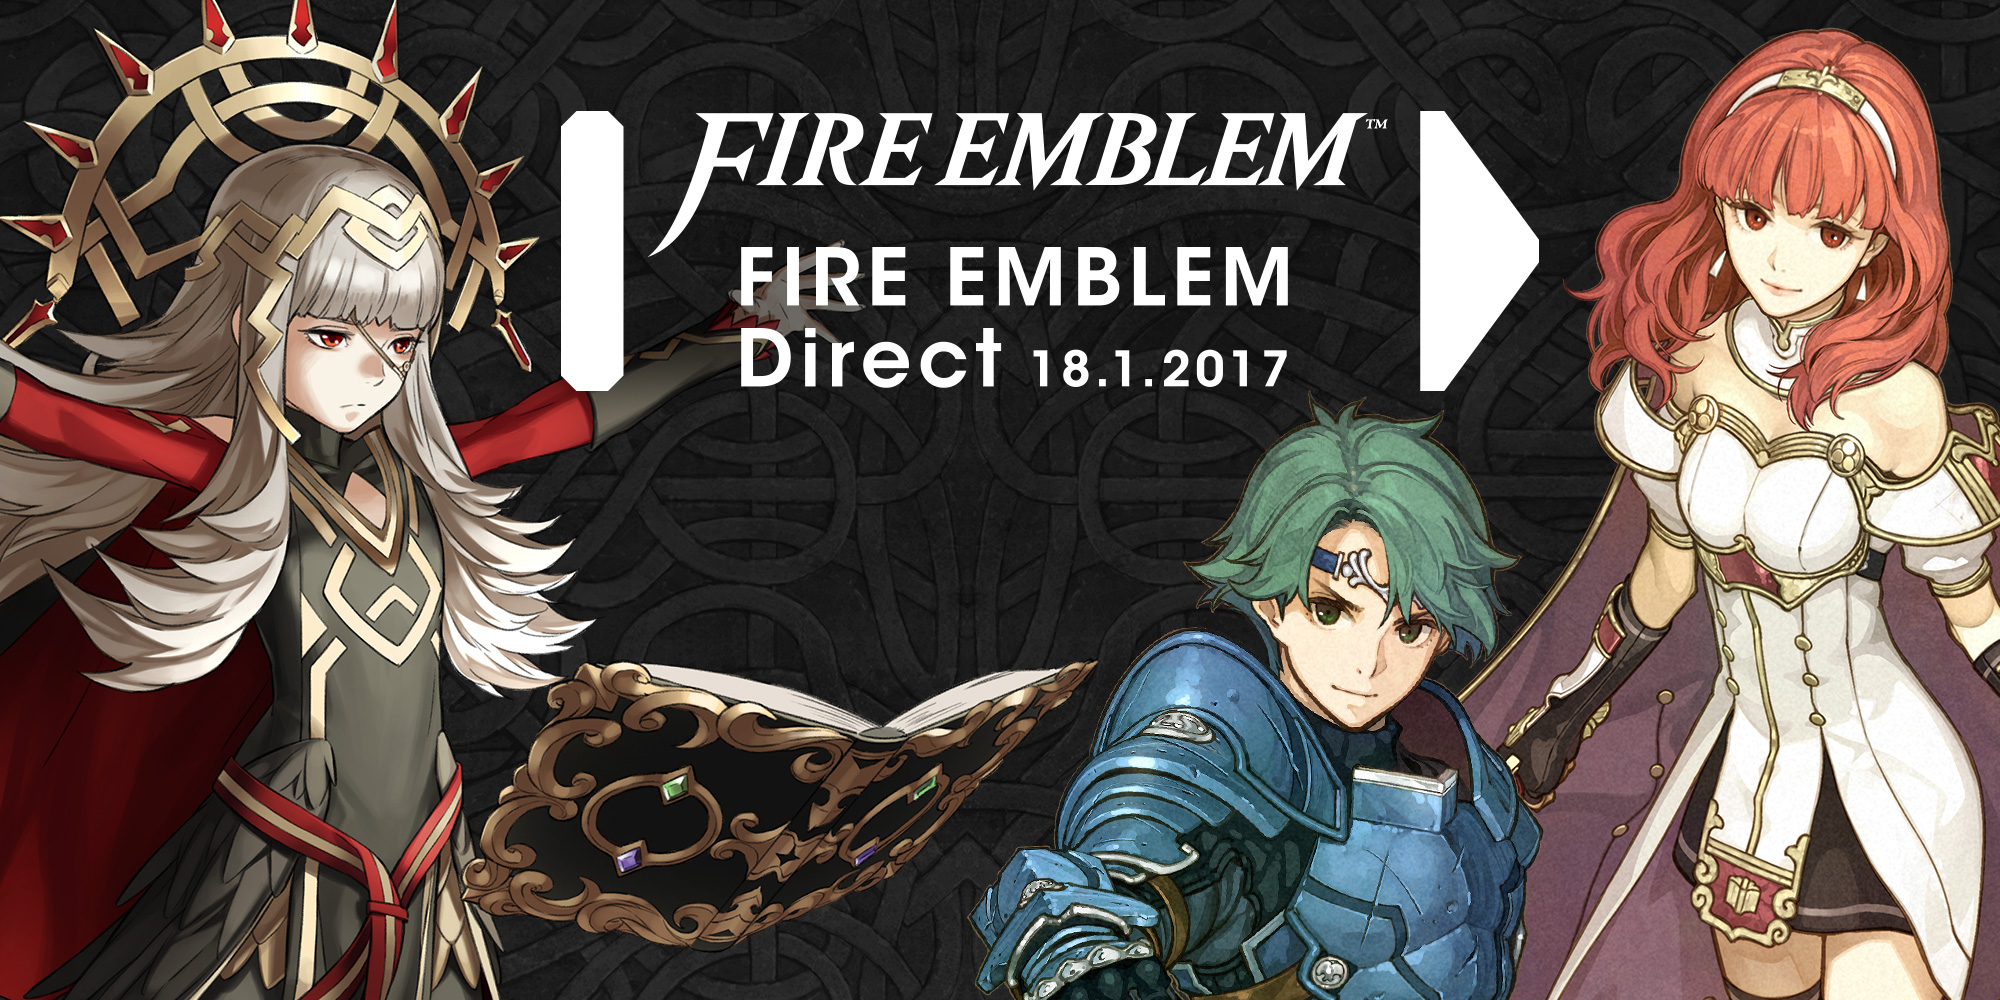 Nintendo revela primeiro título Fire Emblem para dispositivos móveis!